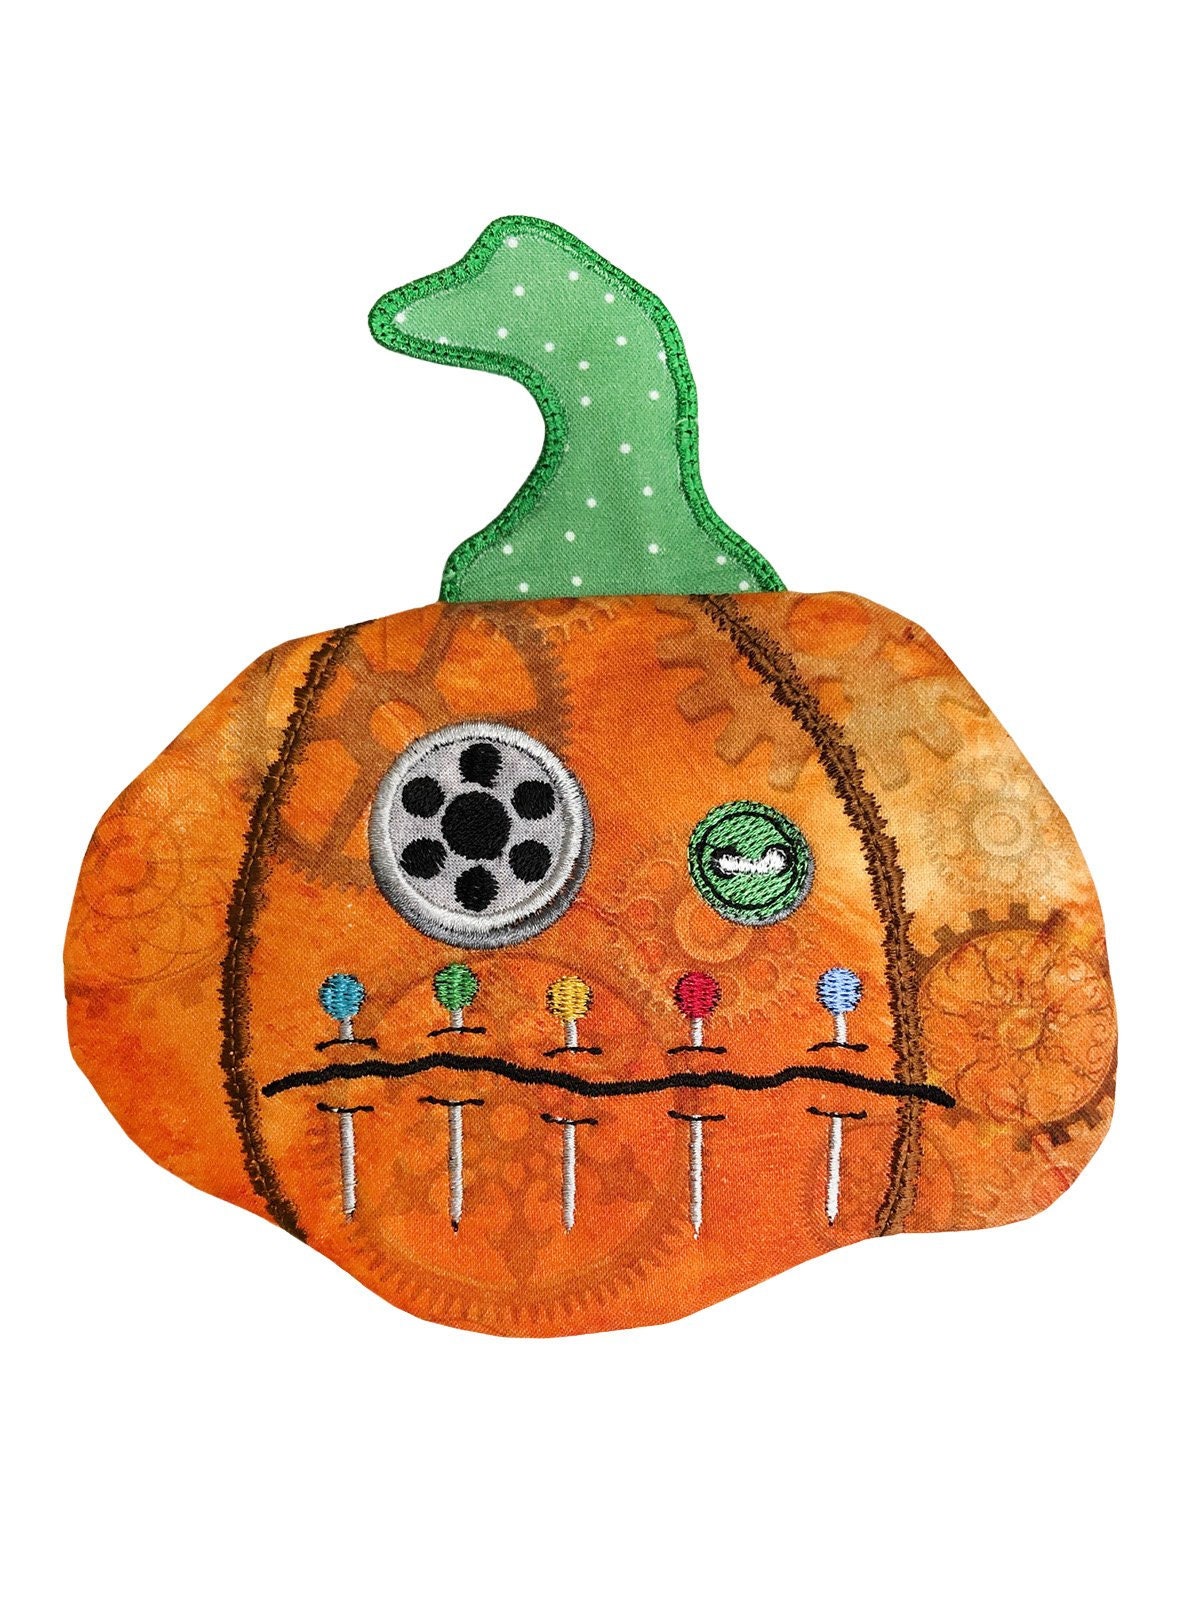 ITH Steampunk Pinhead Pumpkin Pouch Embroidery CD (hqh 06 dde)